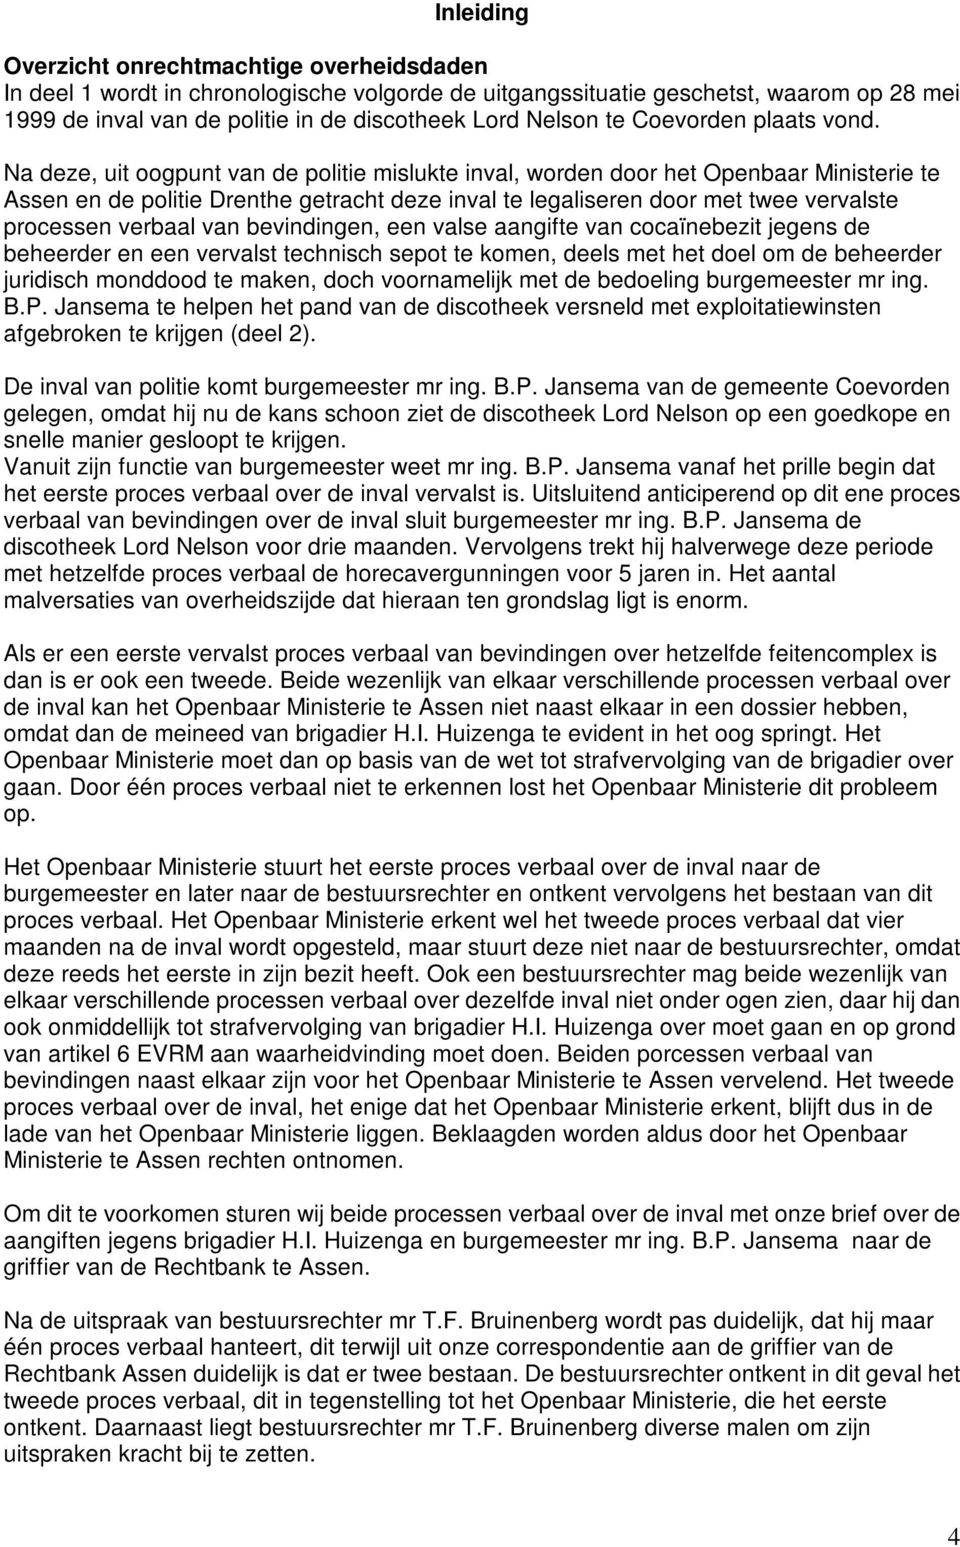 Na deze, uit oogpunt van de politie mislukte inval, worden door het Openbaar Ministerie te Assen en de politie Drenthe getracht deze inval te legaliseren door met twee vervalste processen verbaal van